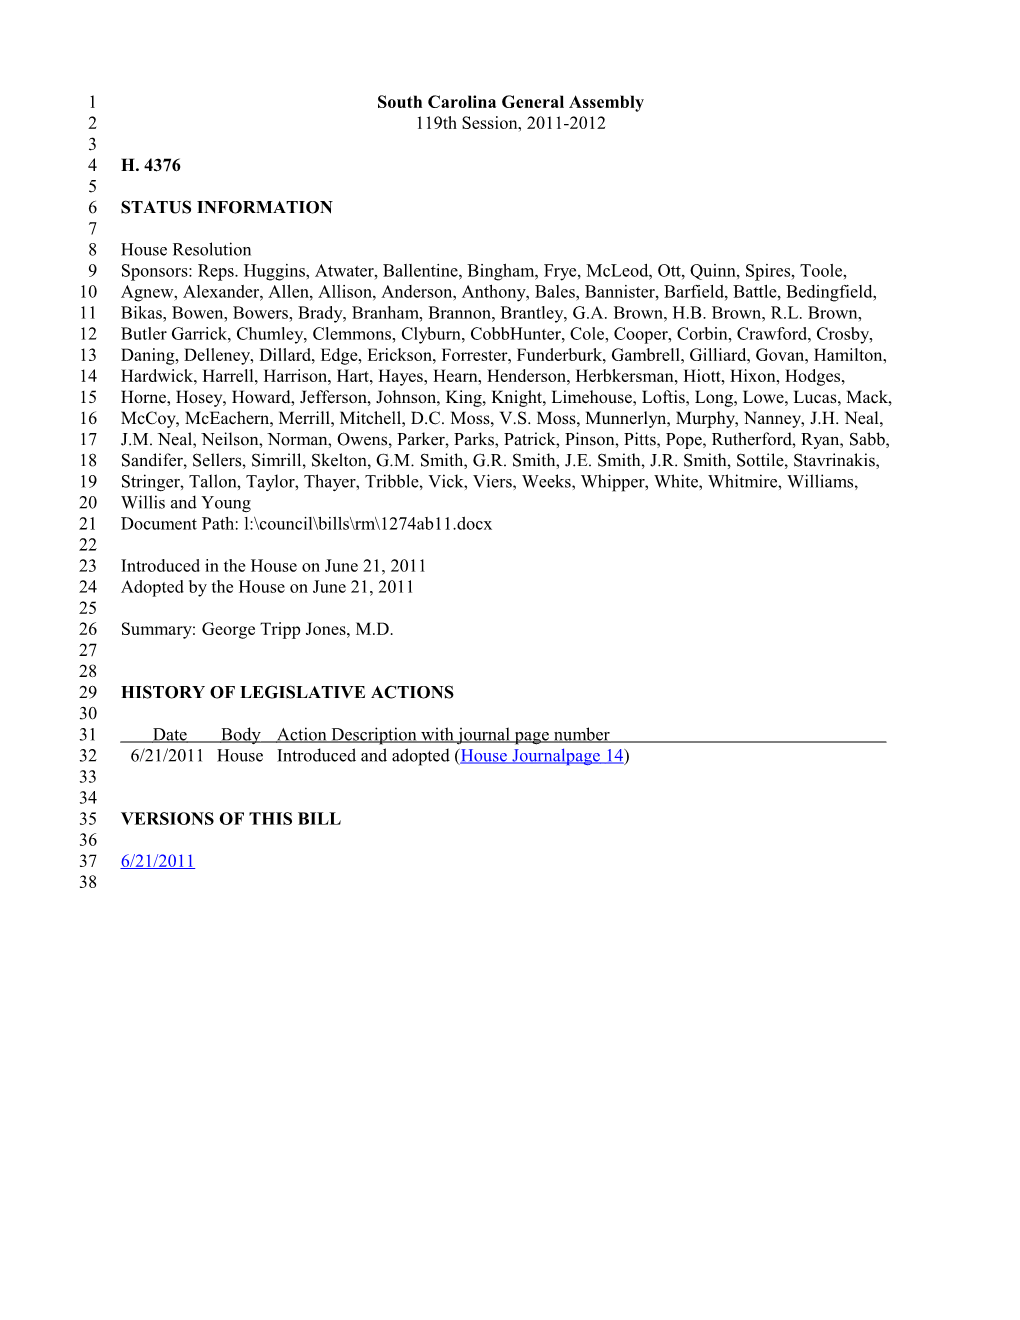 2011-2012 Bill 4376: George Tripp Jones, M.D. - South Carolina Legislature Online